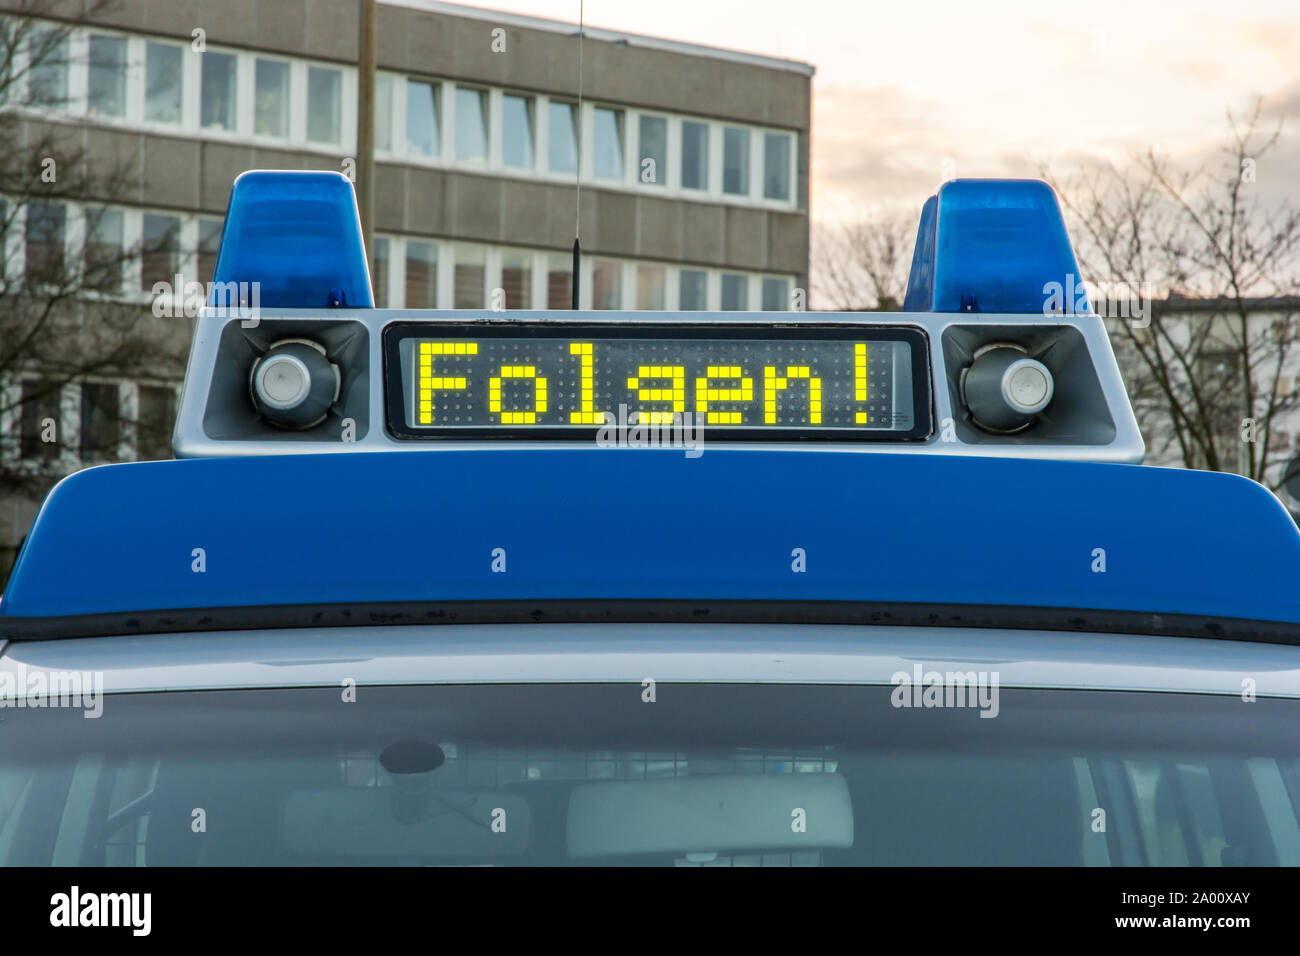 Auto della Polizia con la parola tedesca per "seguire" nel pannello del display Foto Stock